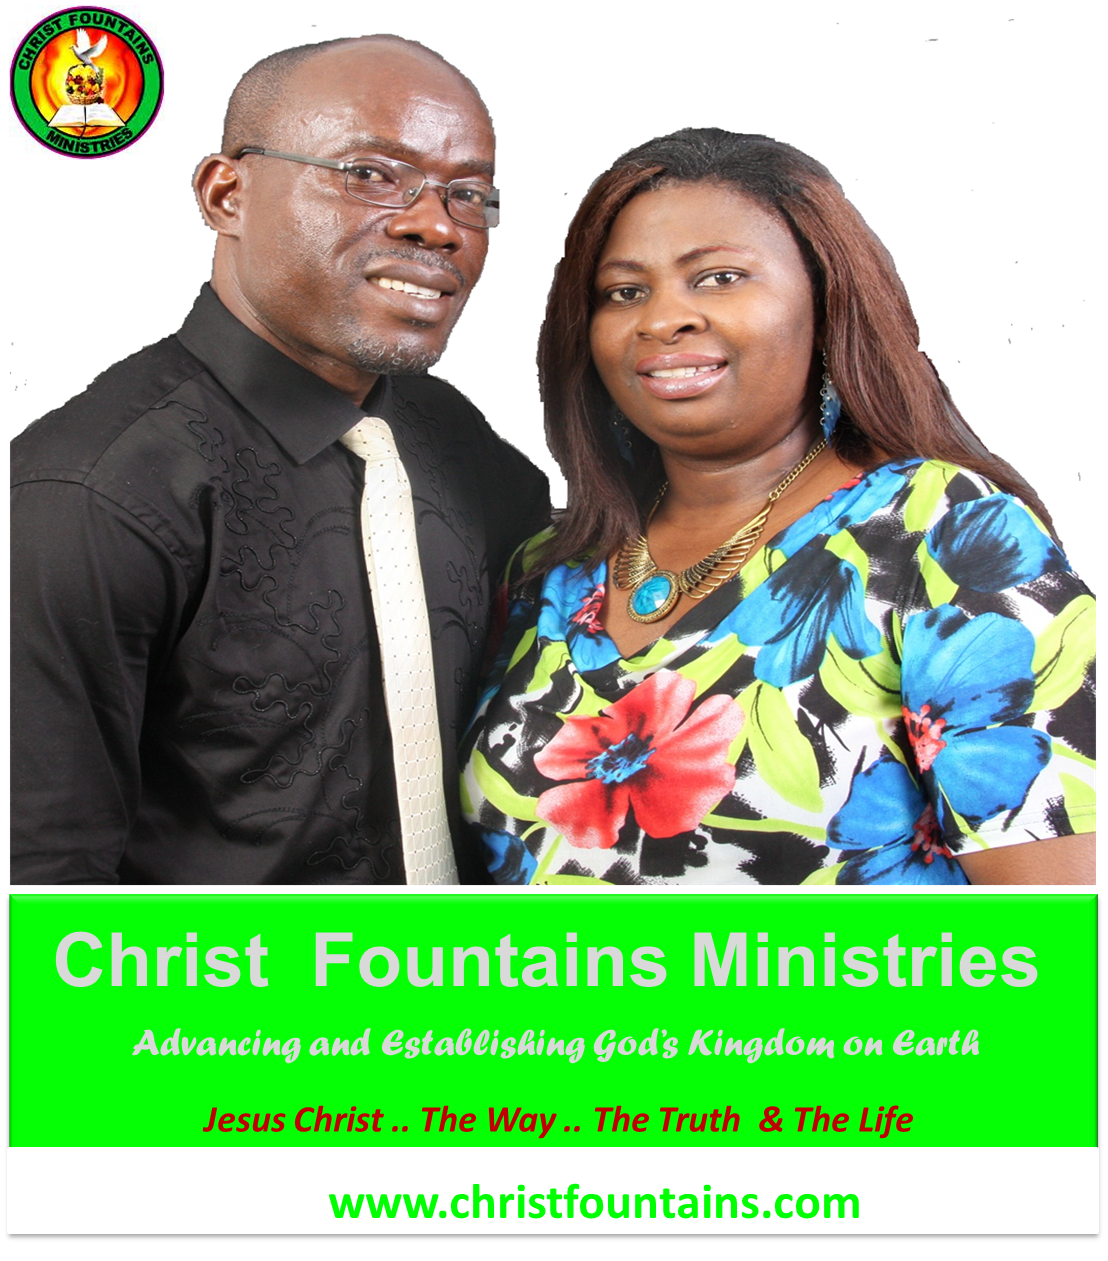 Christ Fountains Ministries- RSA